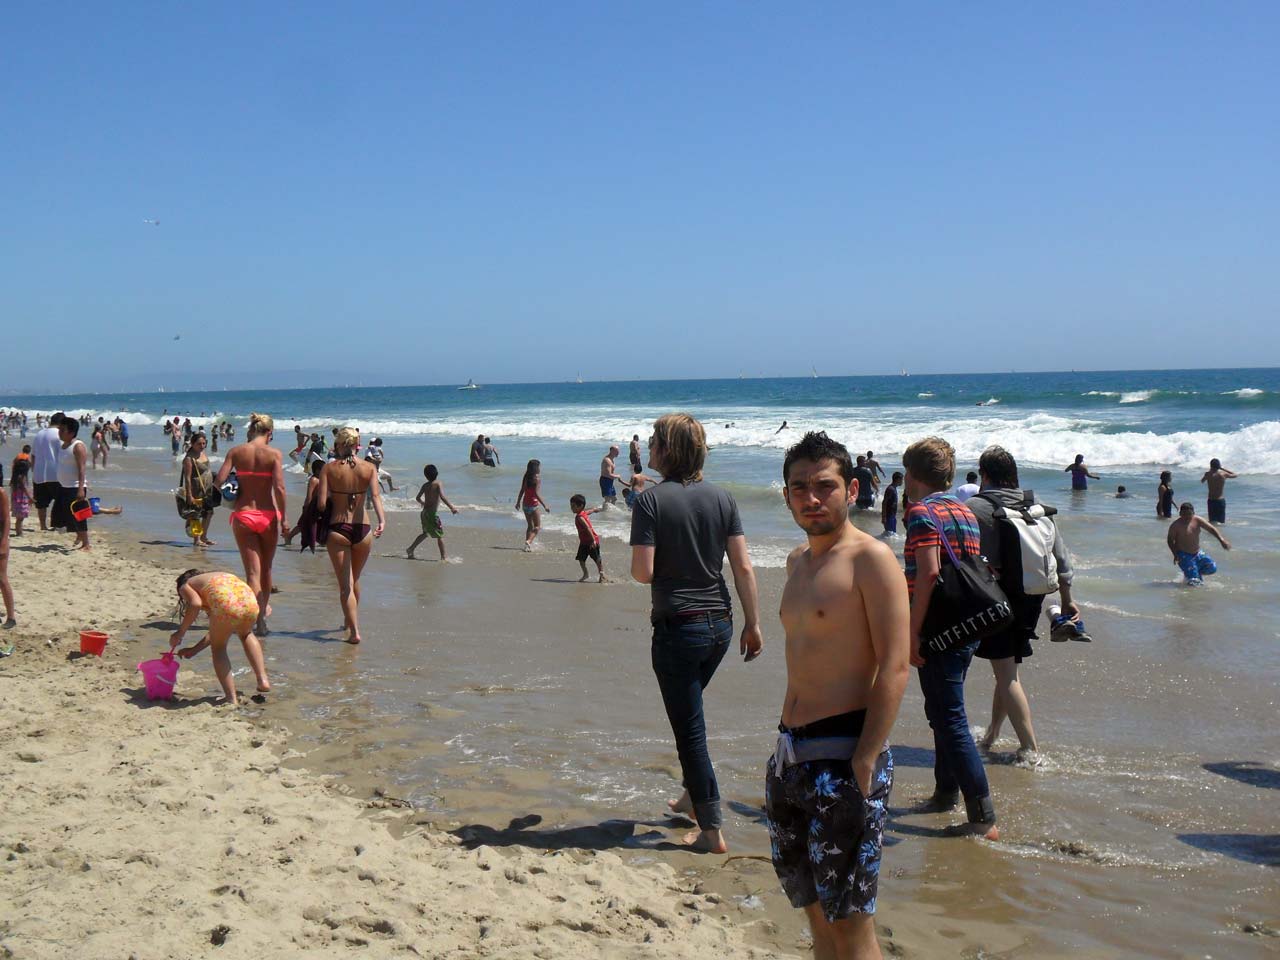 Veee Santa Monica plajı…Aylardan Mayıs olmasına rağmen kalabalık…